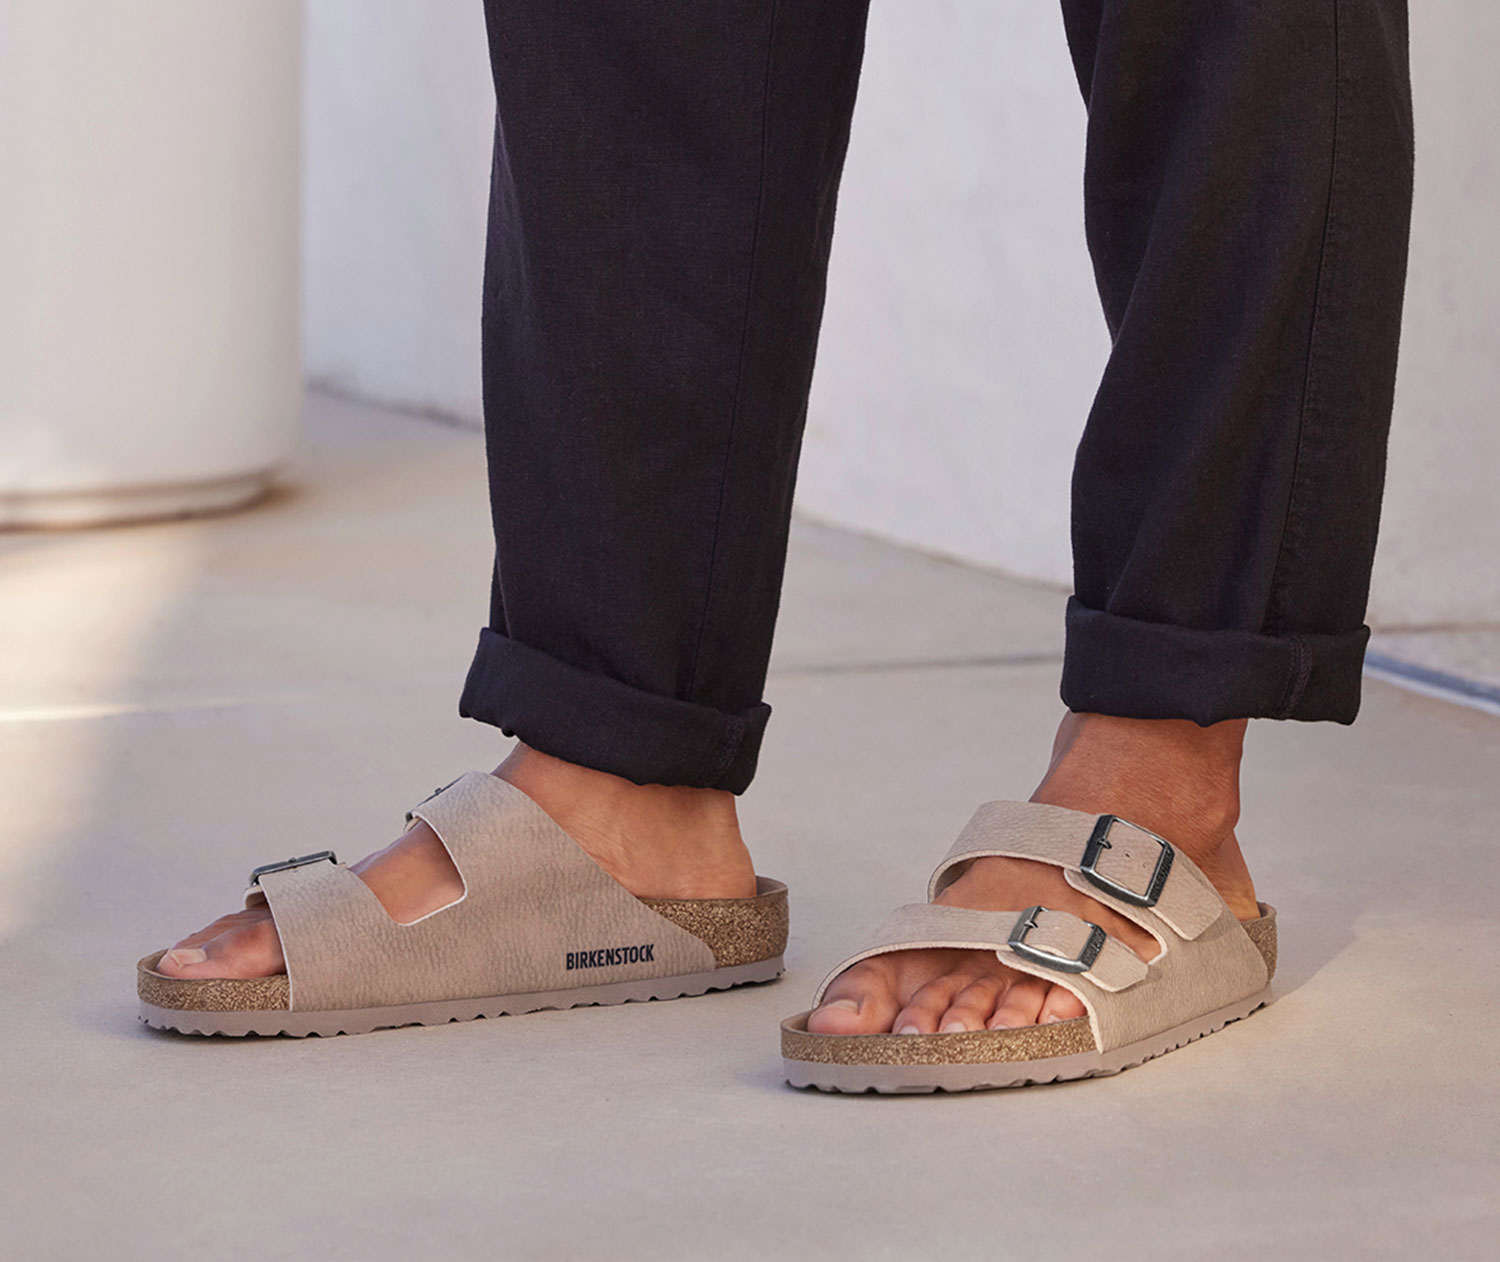 Birkenstock Sandals, Flip Flops | Rack Room Shoes